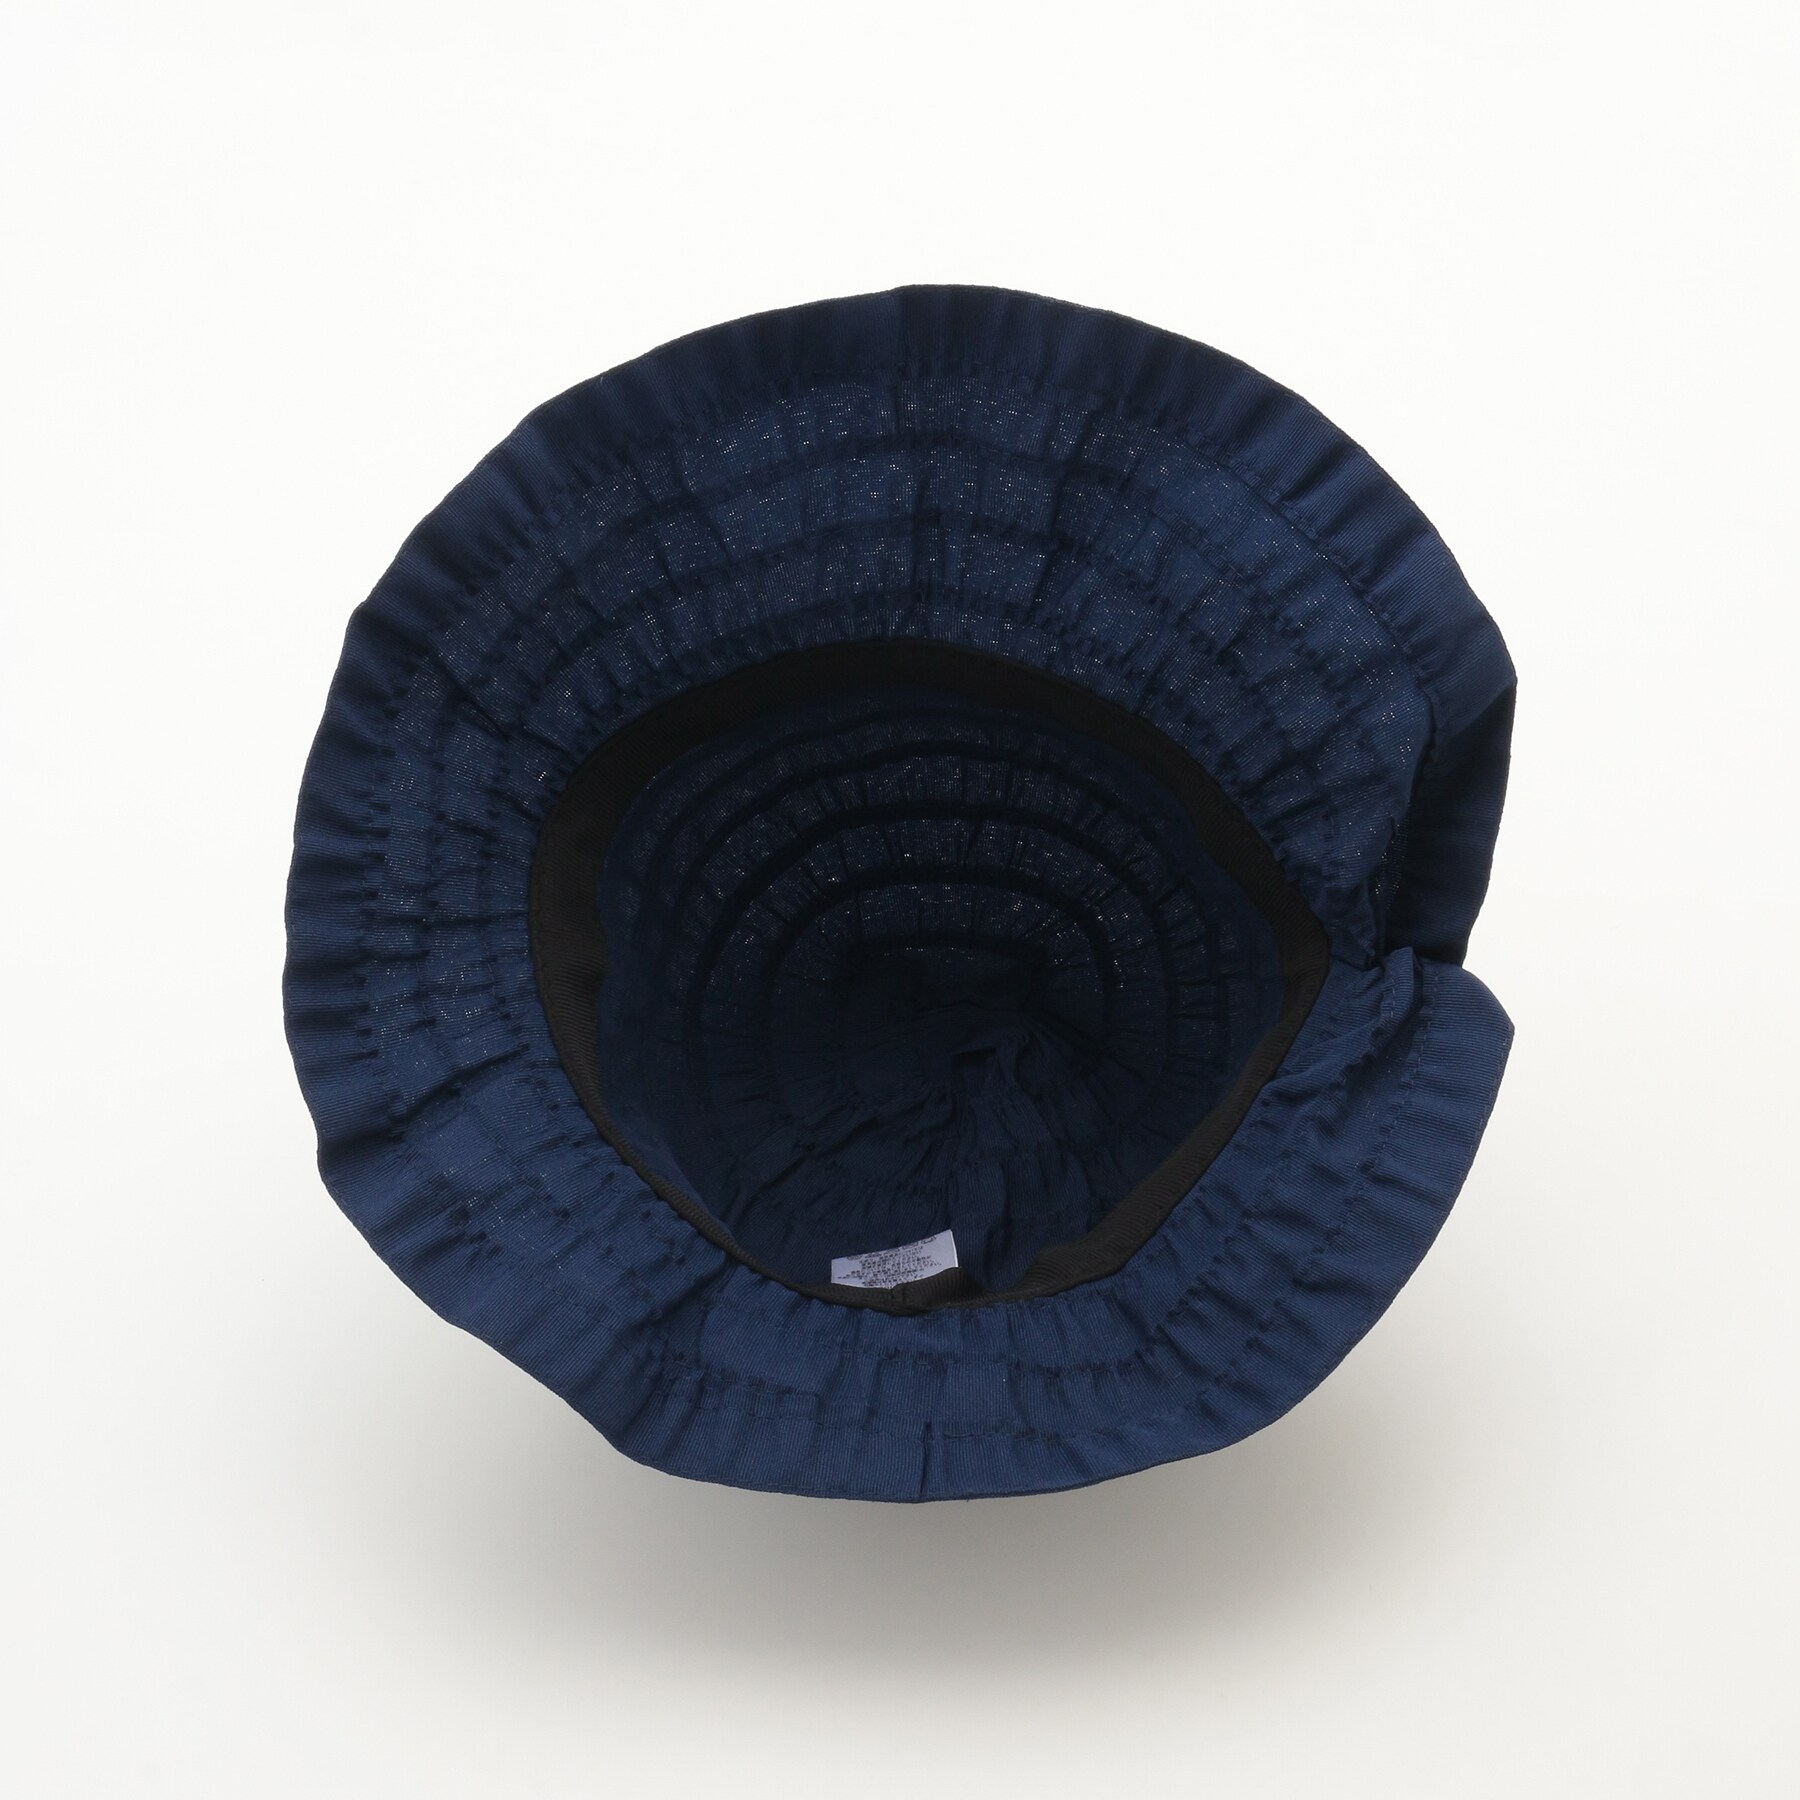 オフプライスストア(ファッショングッズ)(OFF PRICE STORE(Fashion Goods))のシゲマツ サイズ調整機能付きデザイン帽子3